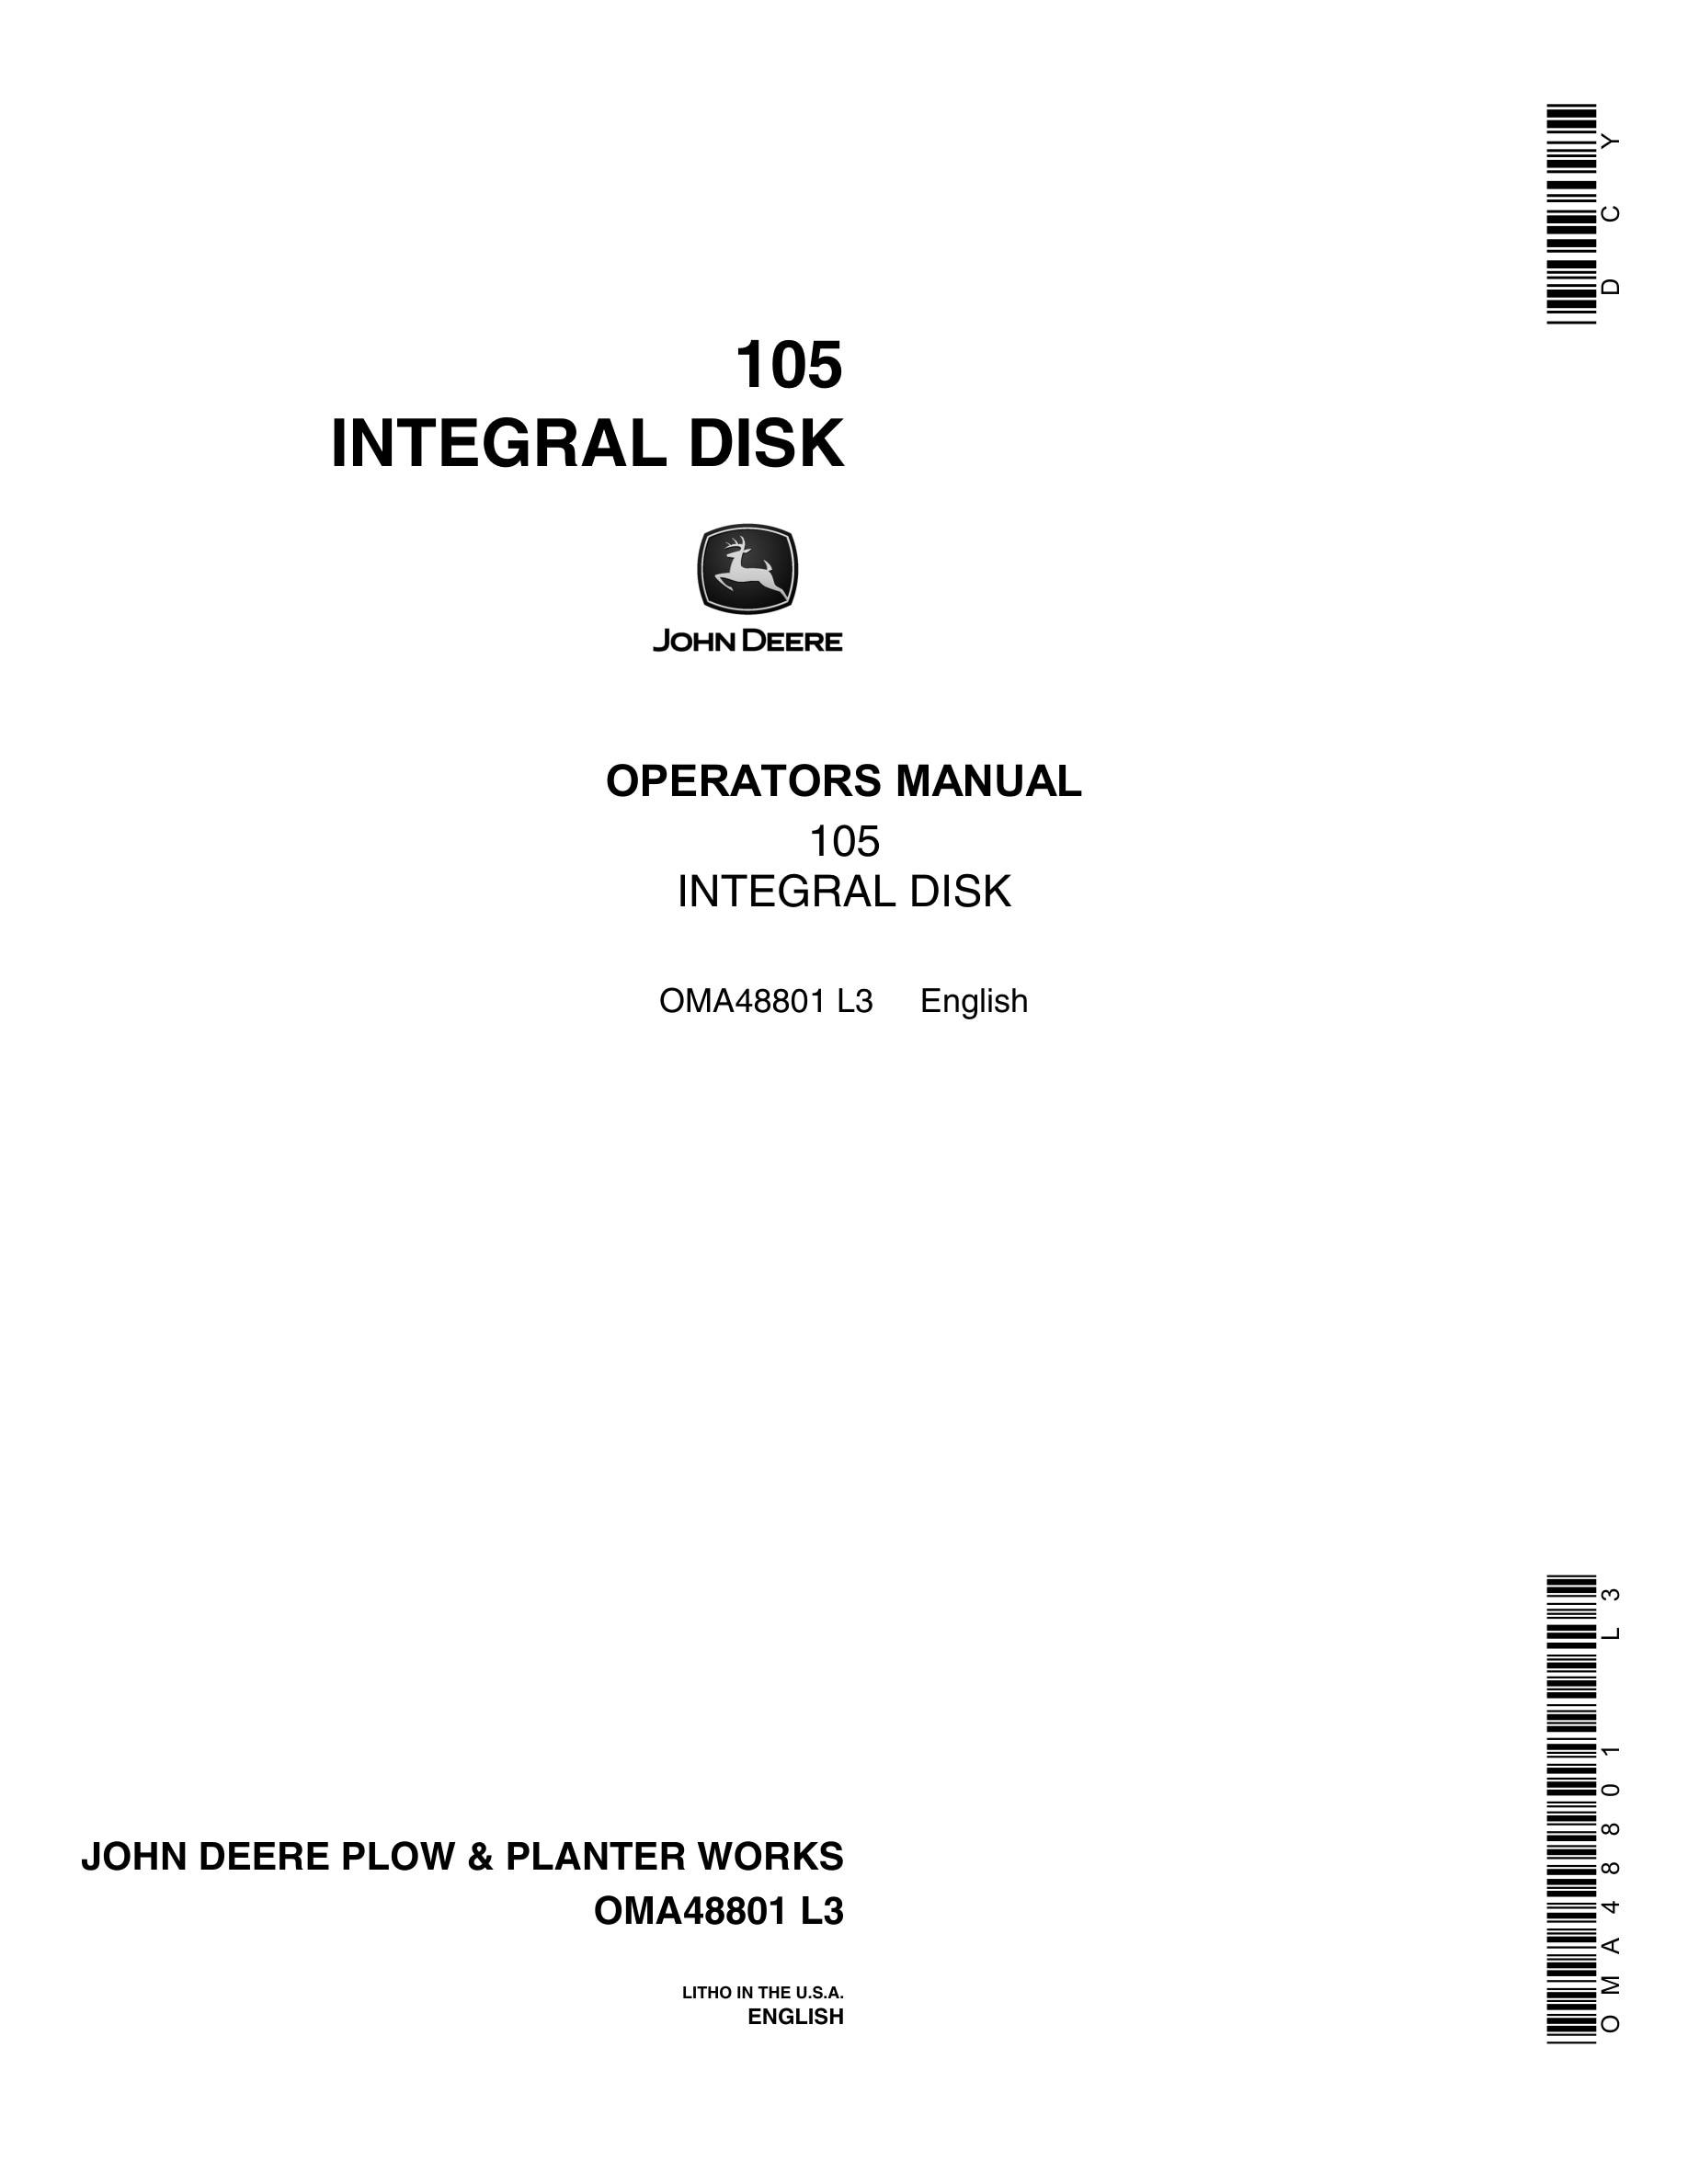 John Deere 105 INTEGRAL DISK Operator Manual OMA48801-1